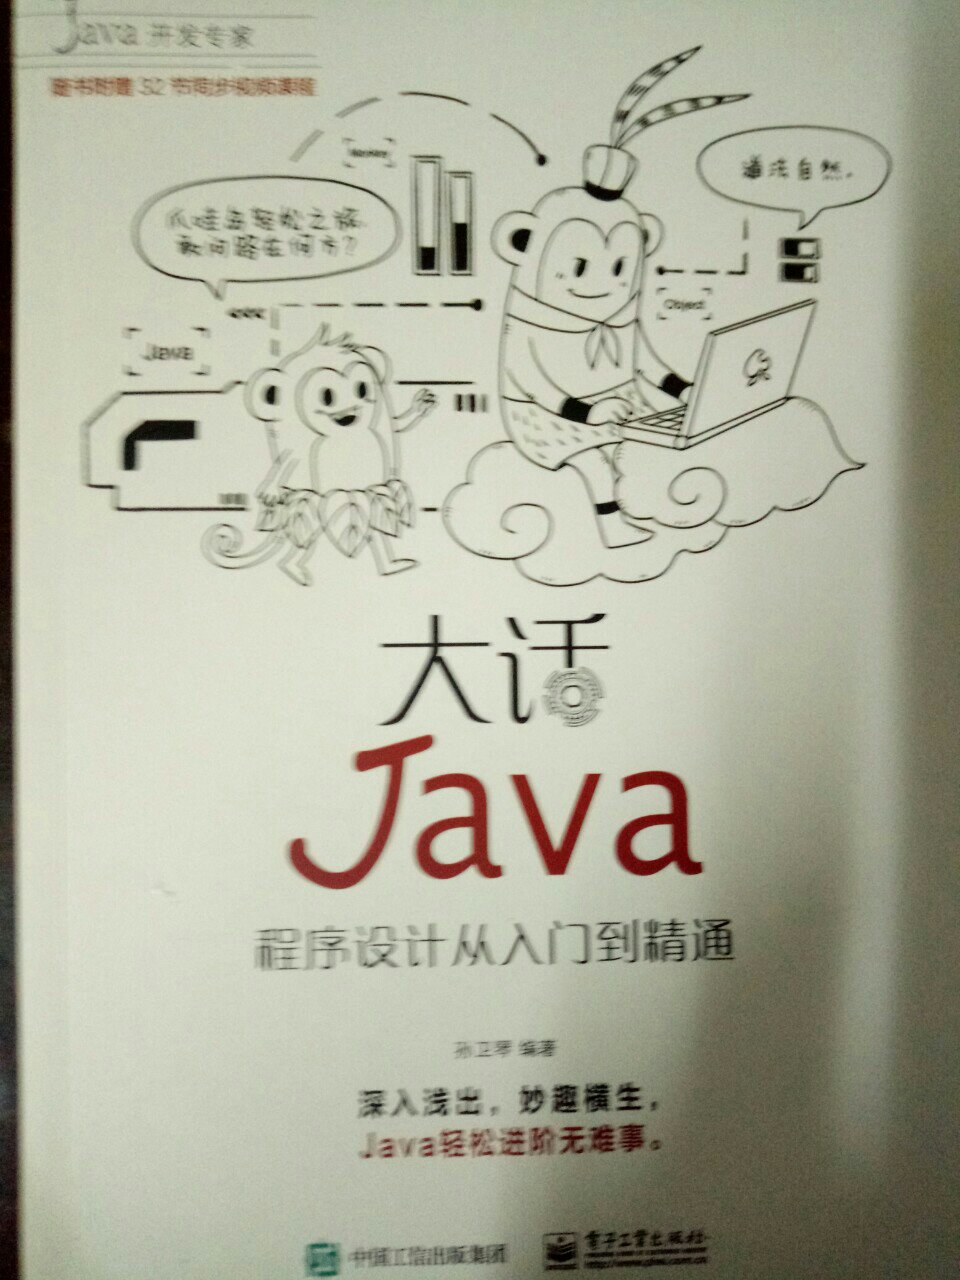 书的包装和质量不错，内容很好，语言诙谐幽默，对学习java帮助很大。